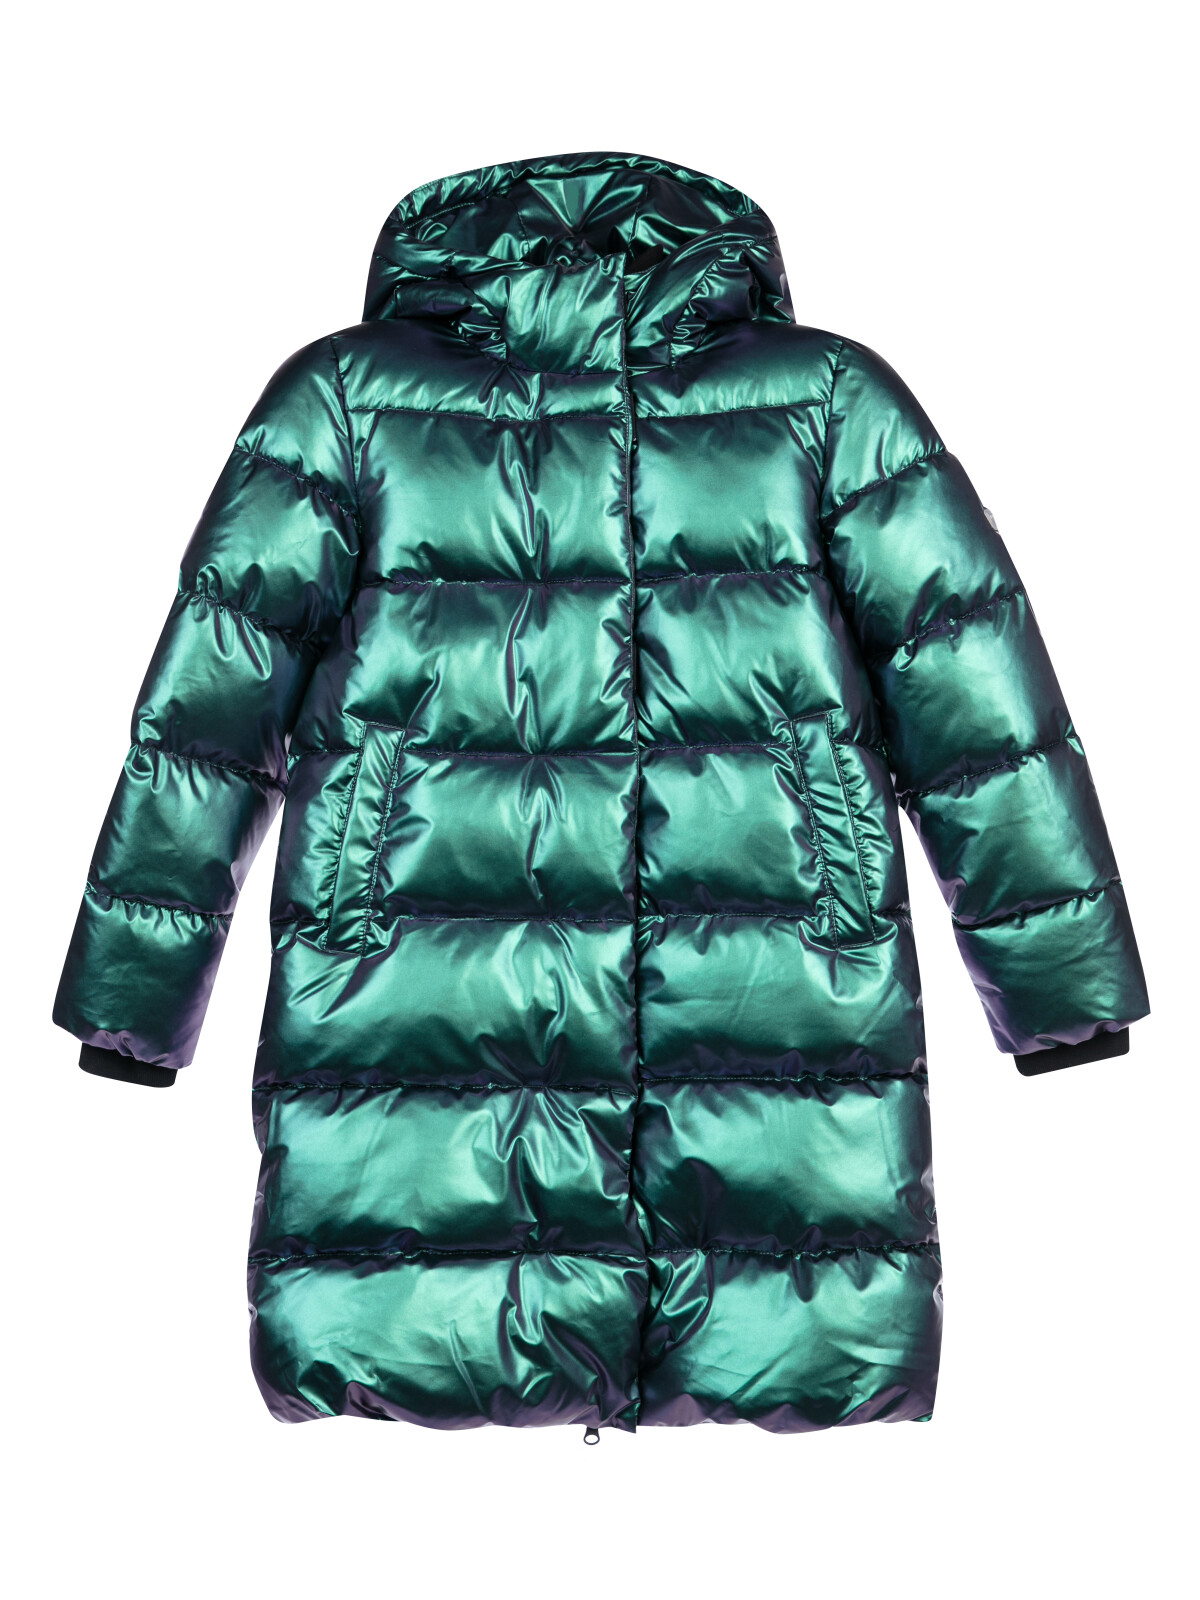 Пальто текстильное с полиуретановым покрытием для девочек PlayToday, фиолетовый, 170 халат для девочек bio textiles nvkd цв фиолетовый р 146